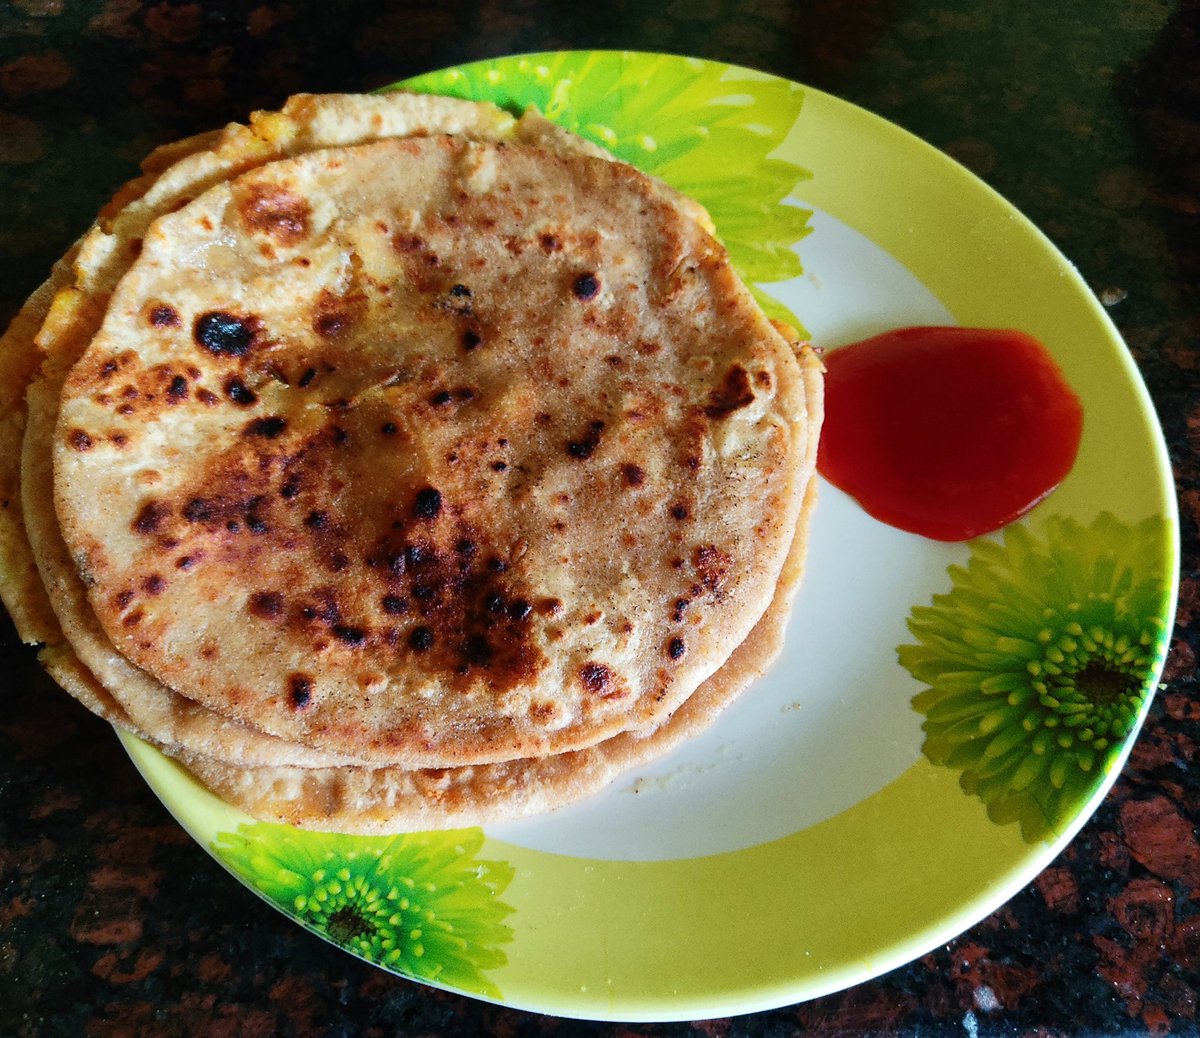 Aloo parata😍😍
#breakfastplatter #foodtweeter #foodworld #sambalpur #bhubaneswar #odisha #india